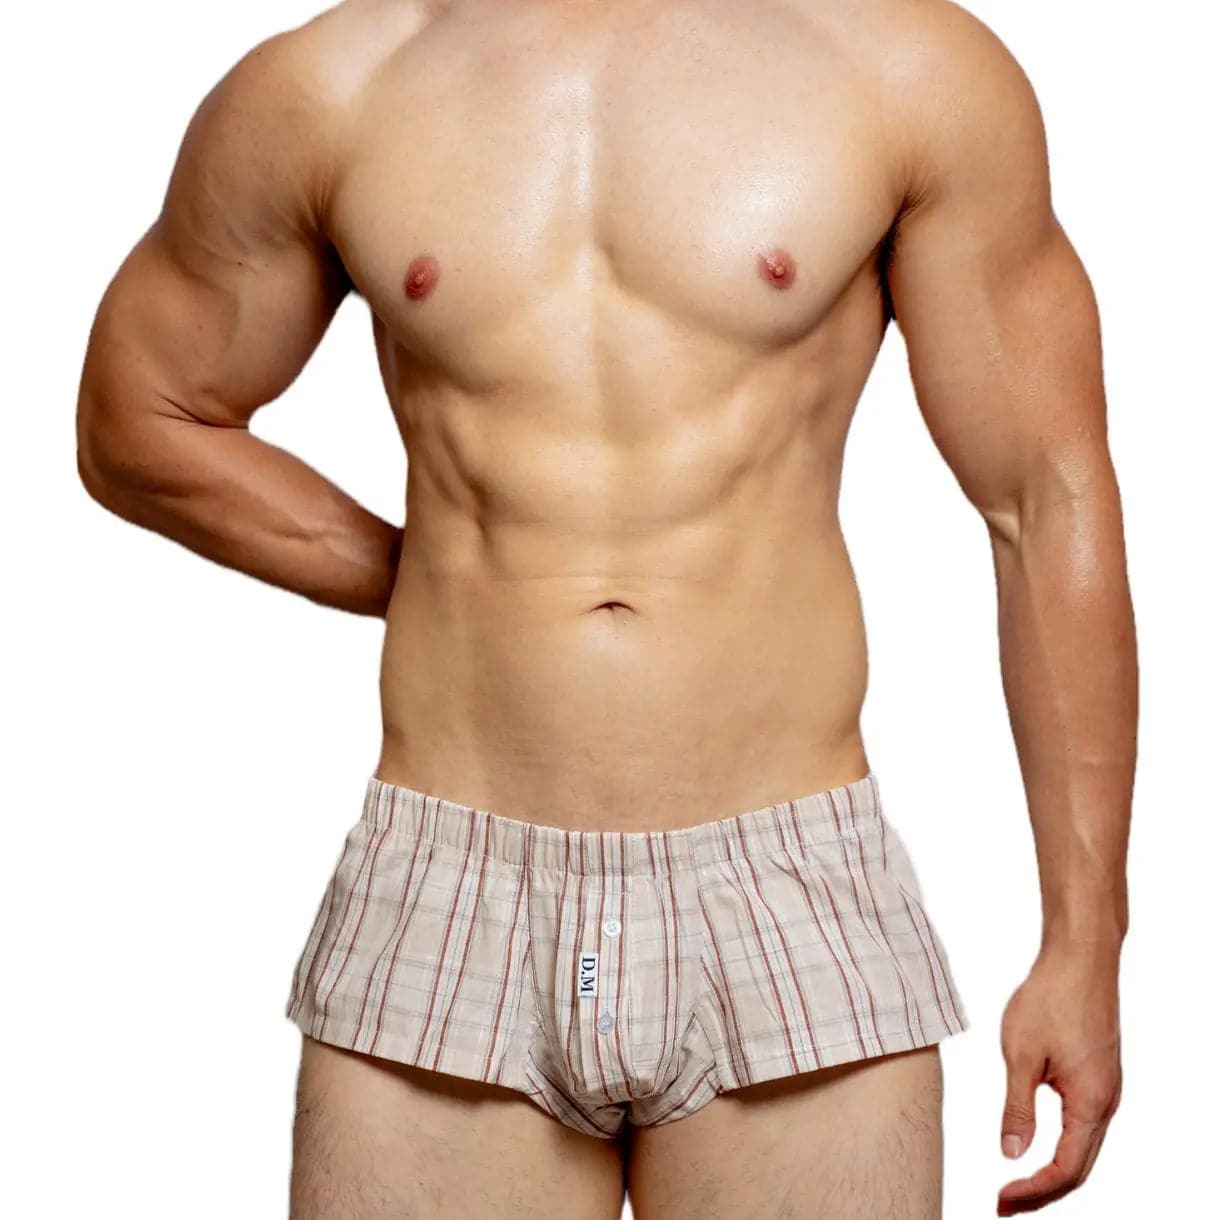 D.M Men's Underwear Low Waist Sexy D.M UNDERWEAR